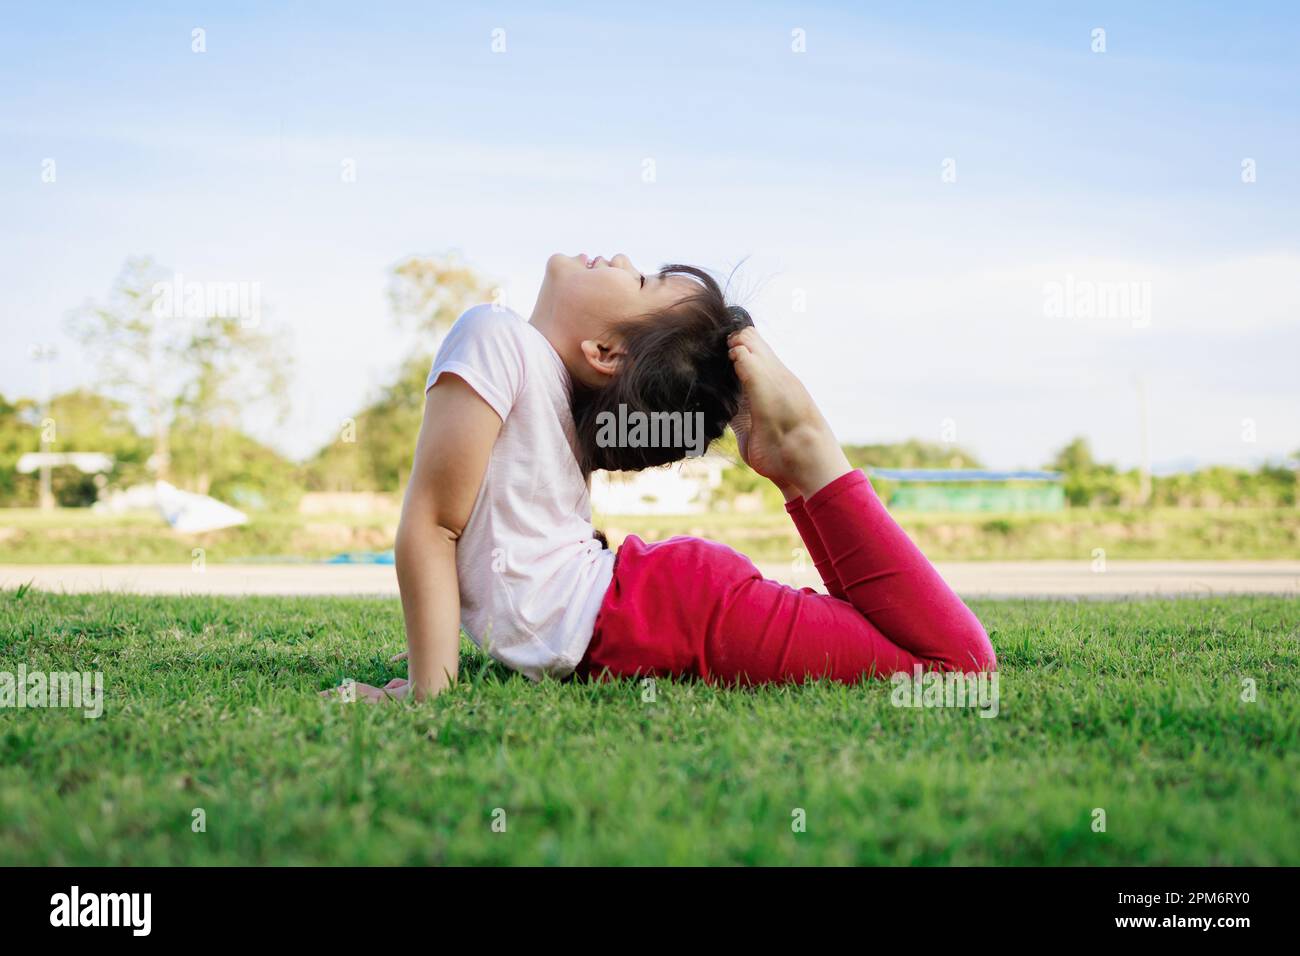 Kindermeditation mit Yoga-Pose auf grünem Grasfeld. Aktivitäten im Freien für Kinder, Yoga-Übungen, Kinder können lernen, wie man trainiert. Stockfoto